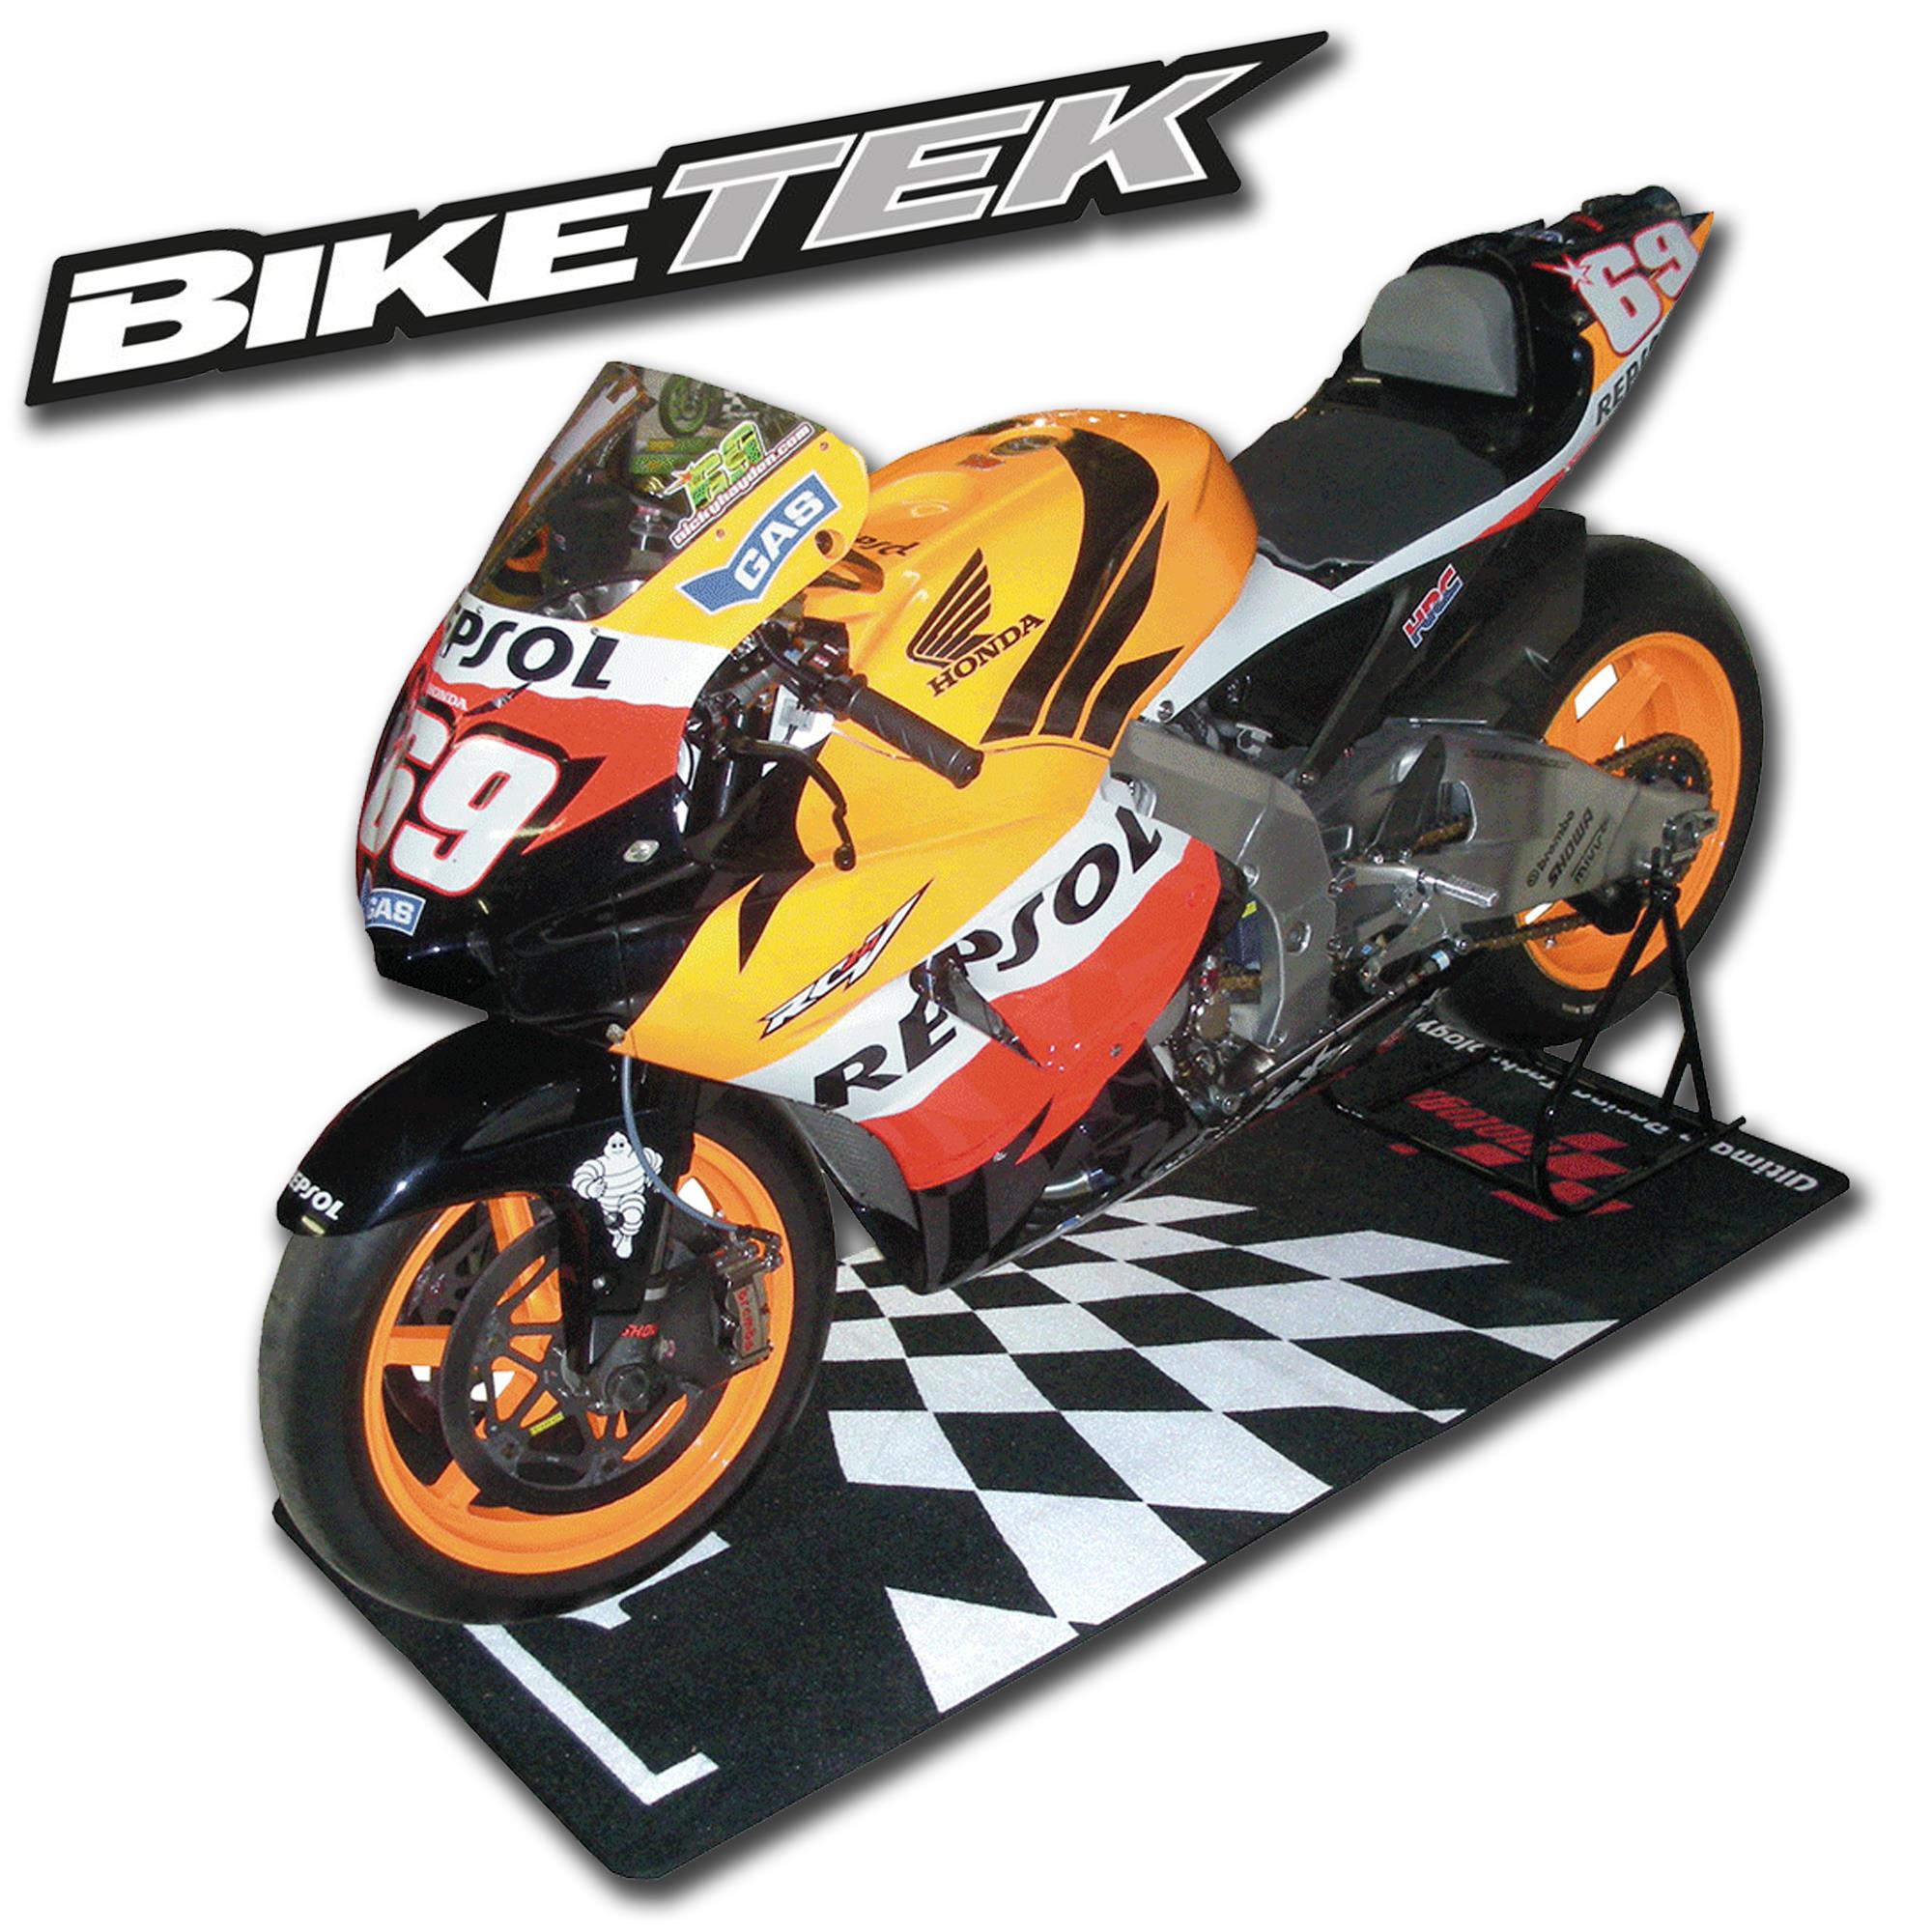 Bike It Official Moto GP Parque Ferme Garage Pit Paddock Mat